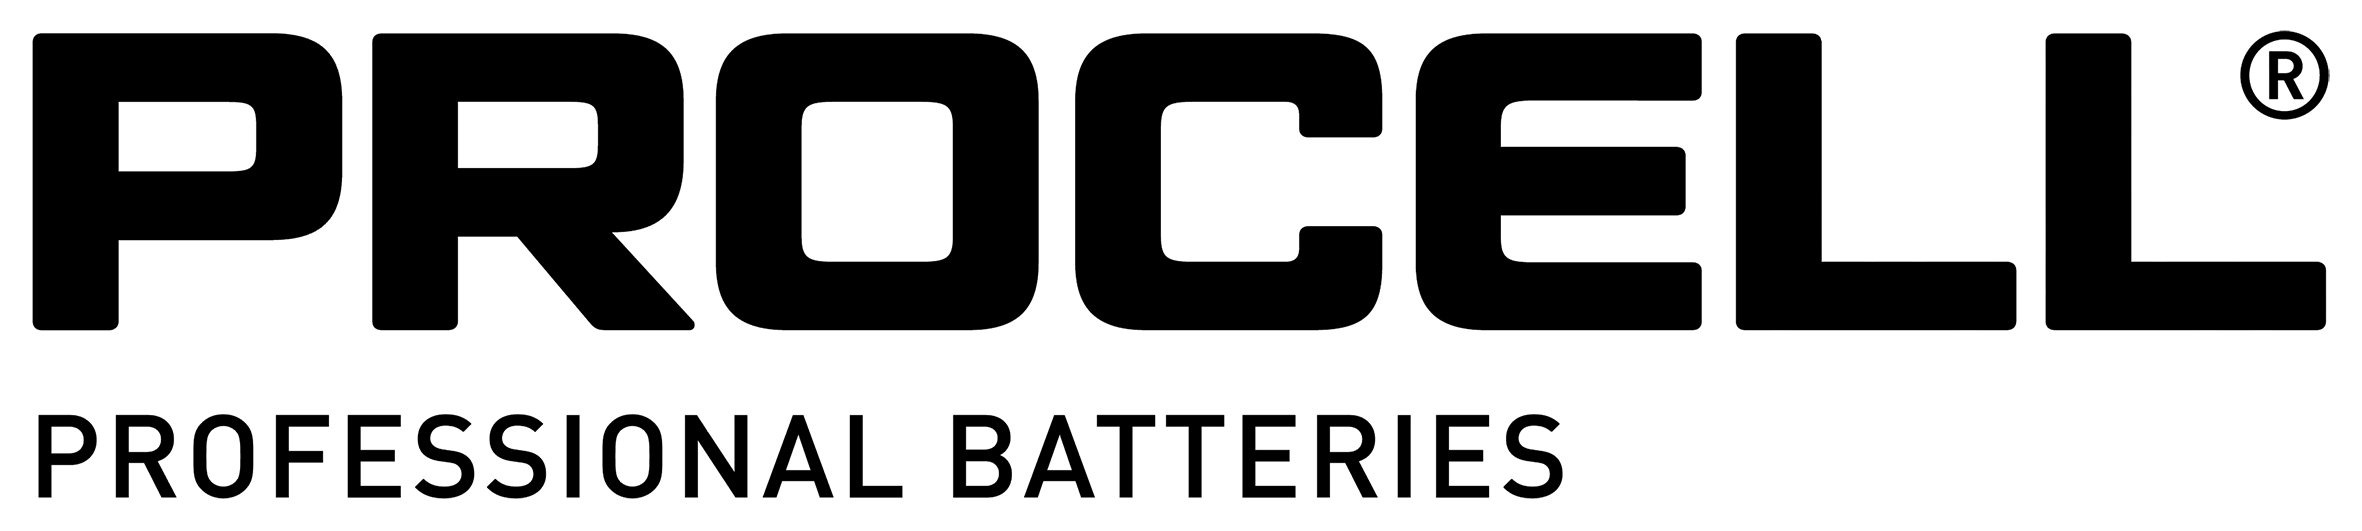 Procell logo20230109 2556 1k5tm4o